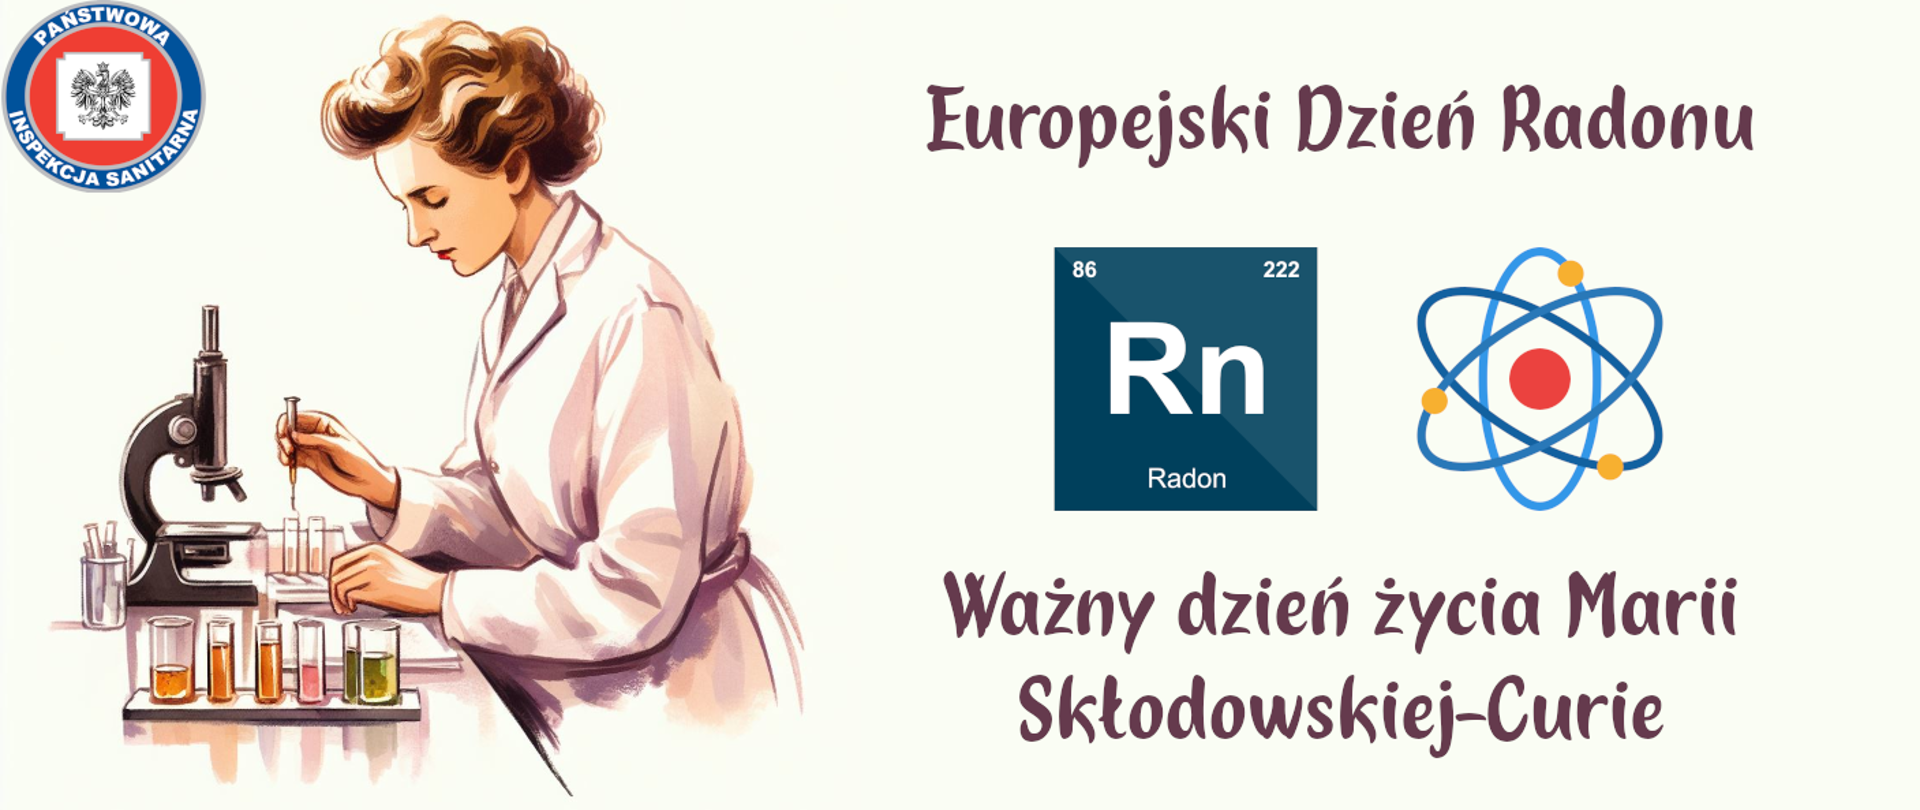 Europejski Dzień Radonu